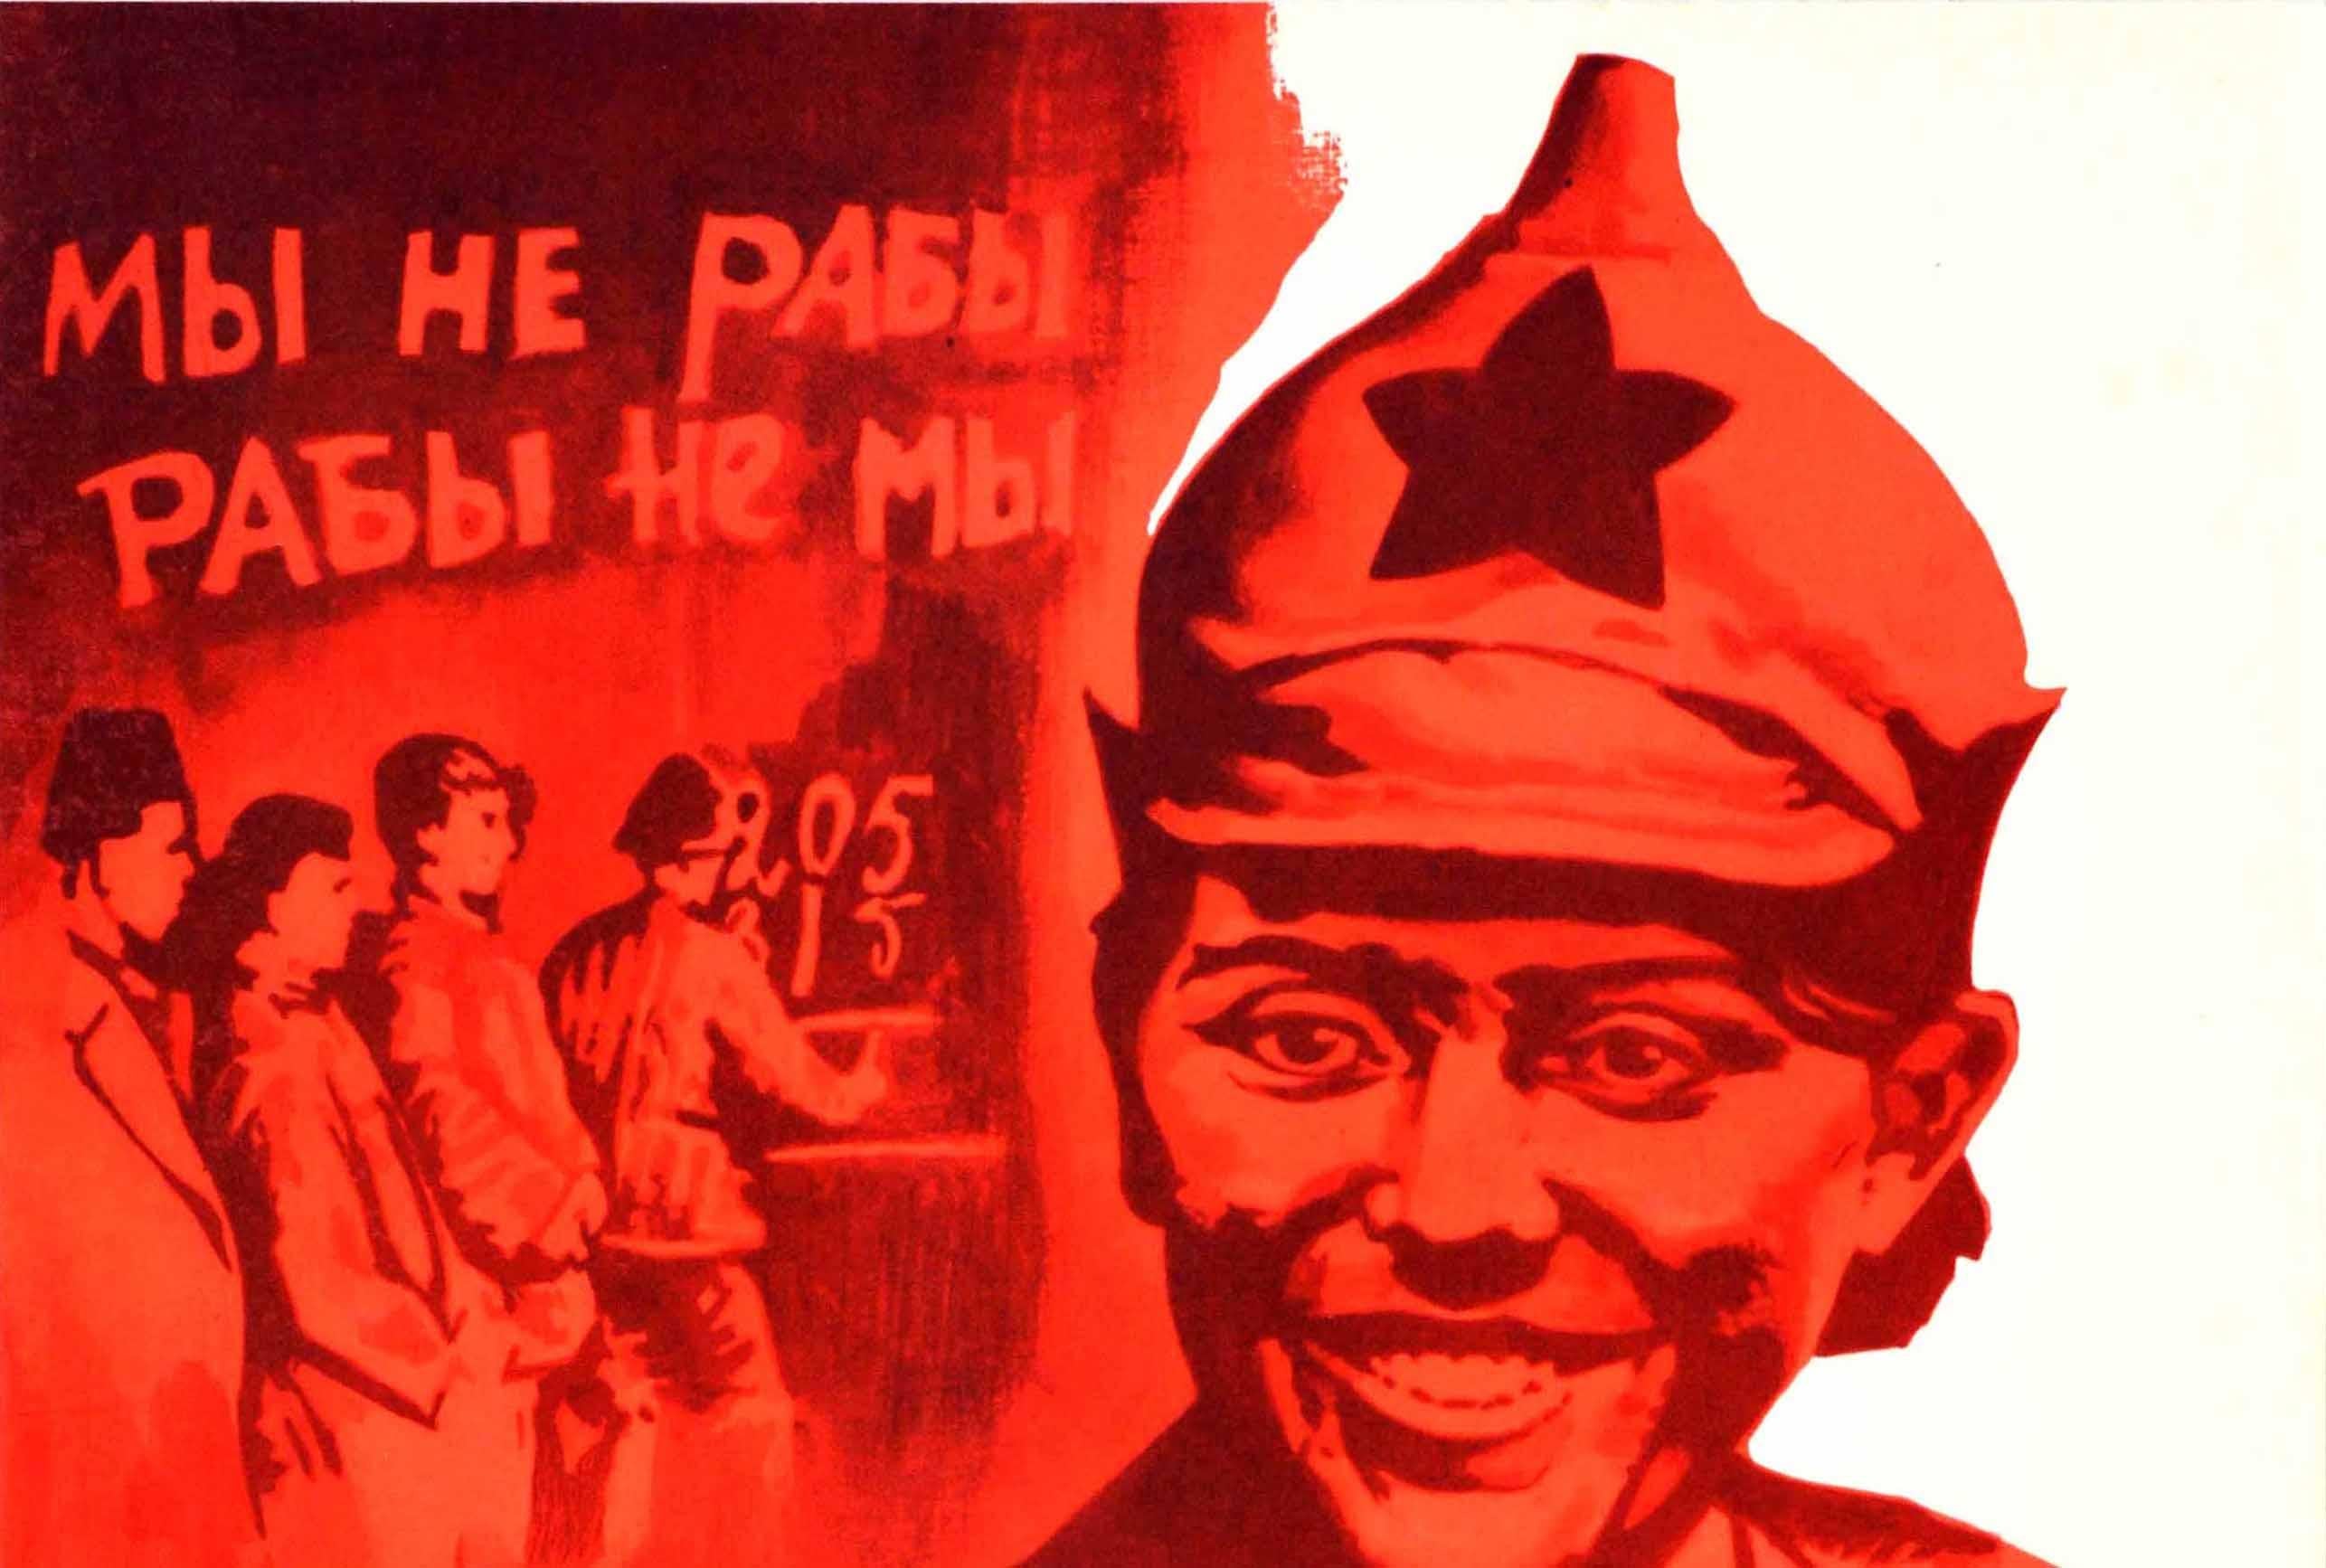 Originales sowjetisches Propagandaplakat - Wir sind keine Sklaven Wir wurden geboren, um ein Märchen wahr werden zu lassen - mit einer Illustration in Rottönen, die einen lächelnden Armeesoldaten zeigt, der einen Sputnik-Satelliten in metallischem